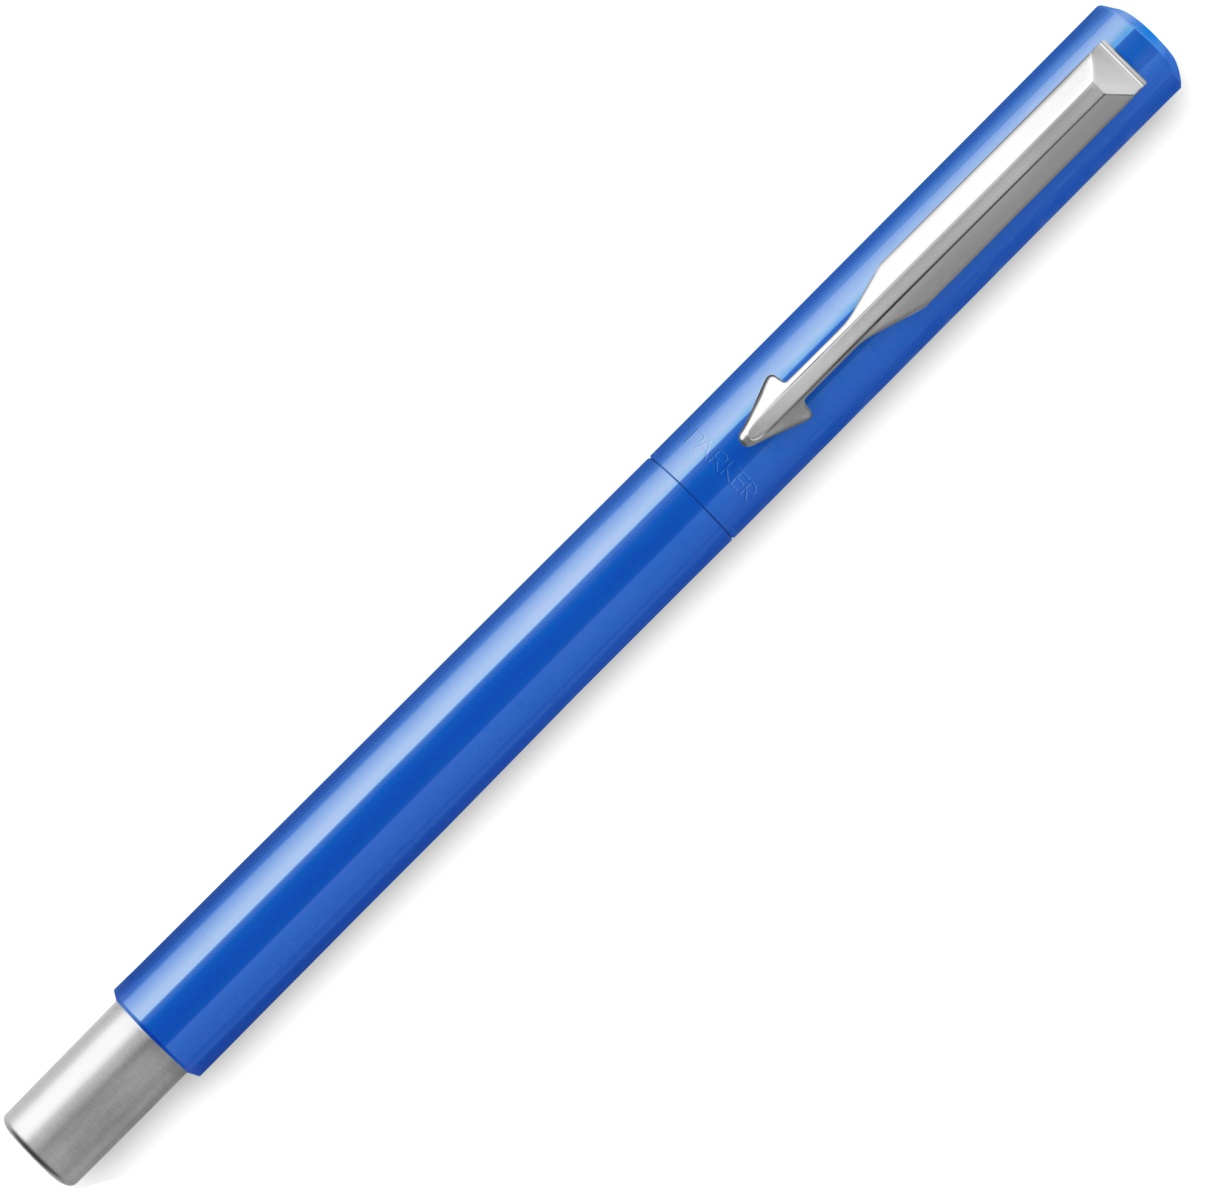  Ручка перьевая Parker Vector Standard F01 Blue CT (Перо F), фото 2